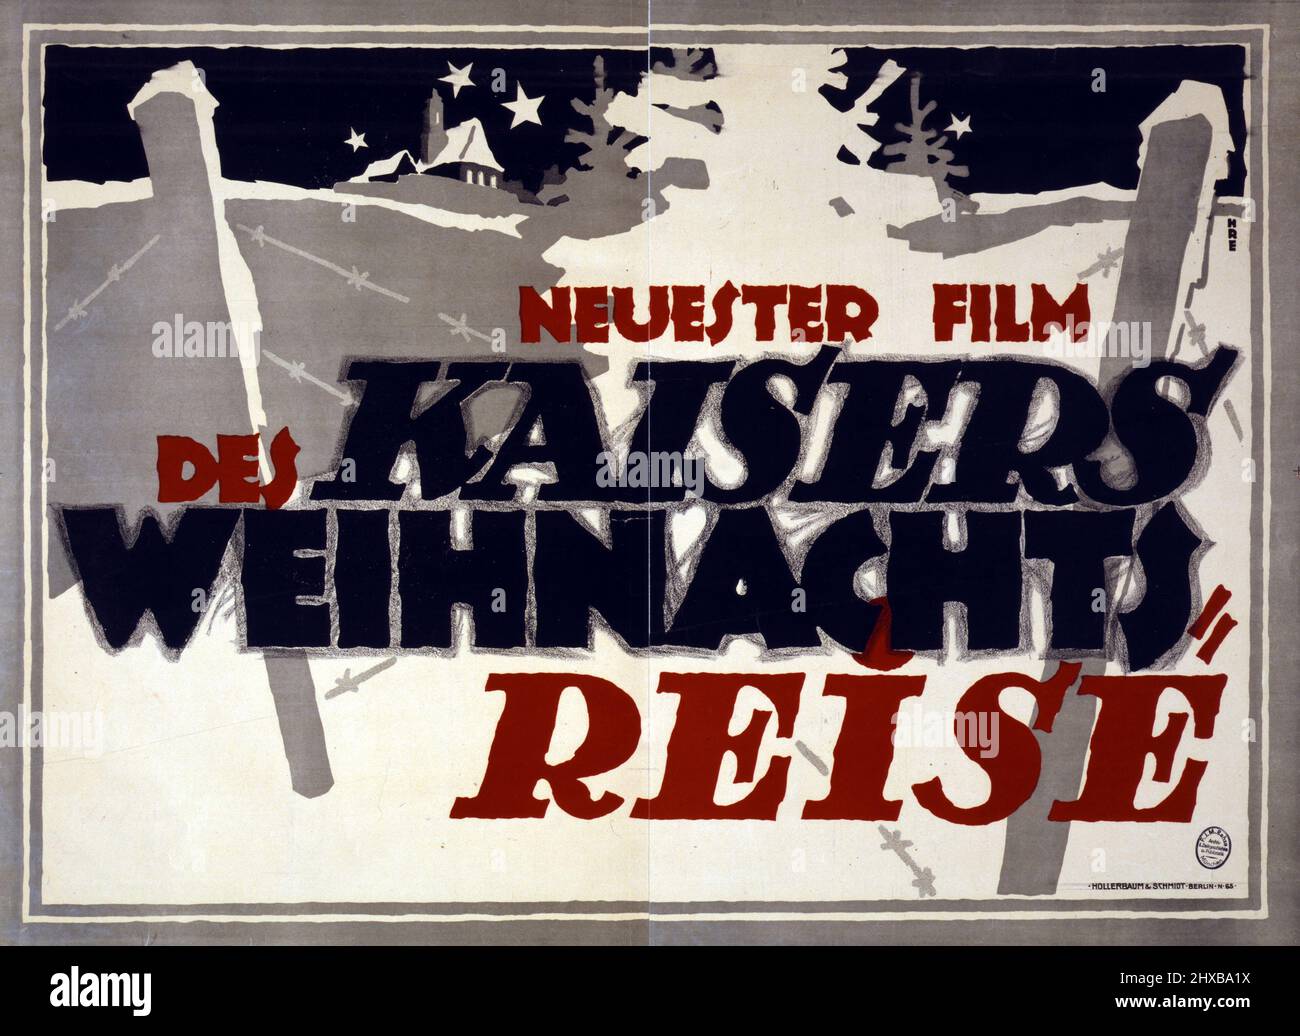 Des Kaisers Weihnachtsreise / HRE - film de Neuster 1917. Artiste Hans Rudi Erdt. Rehse Archiv für Zeitgeschichte und Publizistik. Poster de film. Banque D'Images